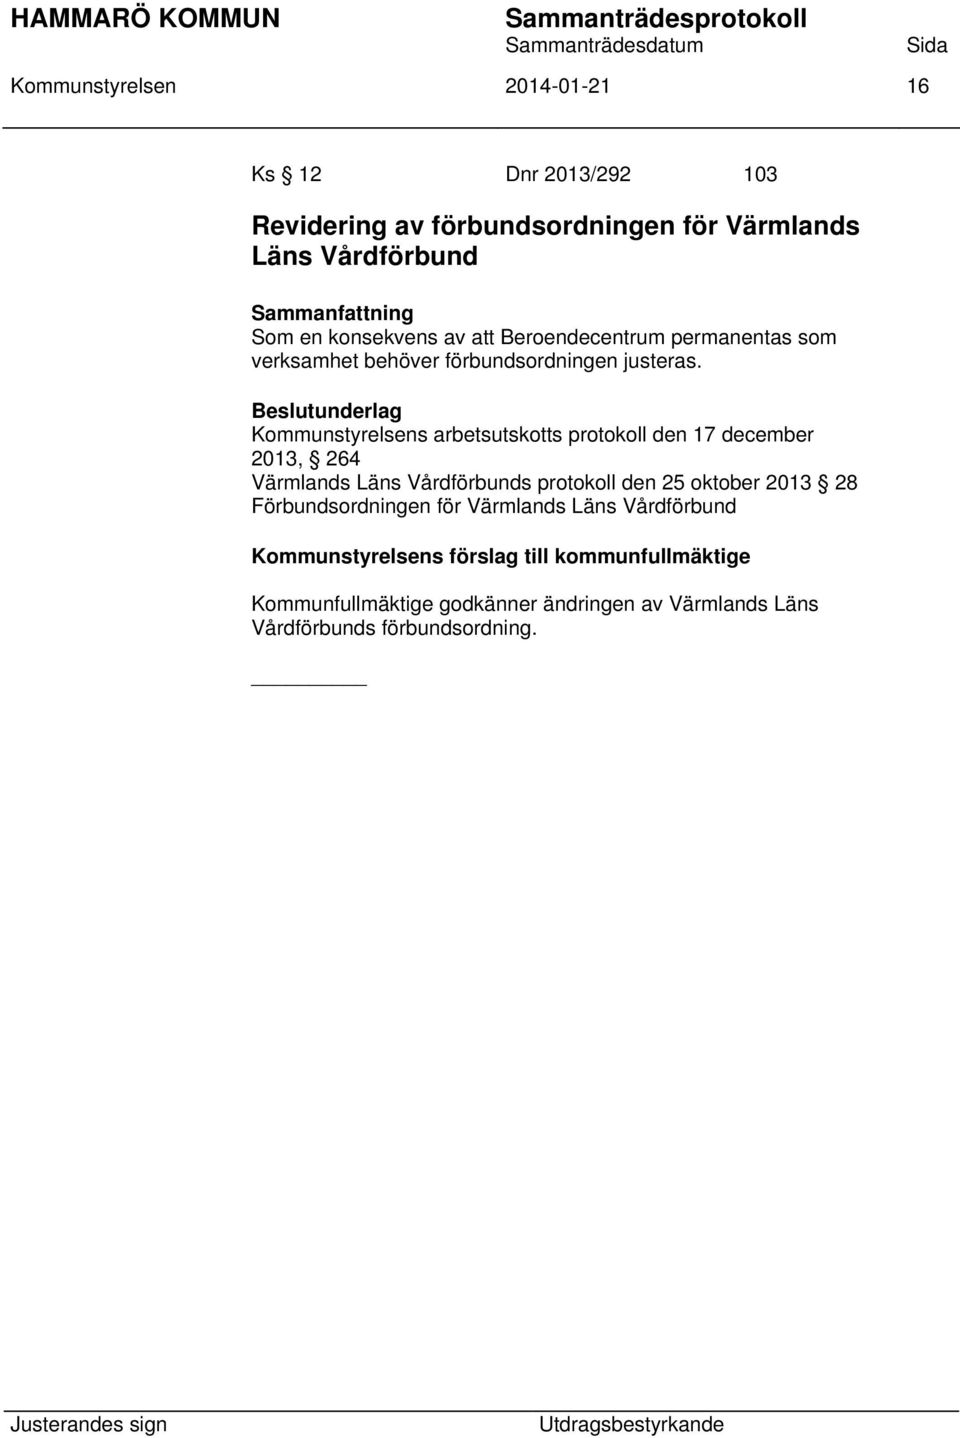 Beslutunderlag Kommunstyrelsens arbetsutskotts protokoll den 17 december 2013, 264 Värmlands Läns Vårdförbunds protokoll den 25 oktober